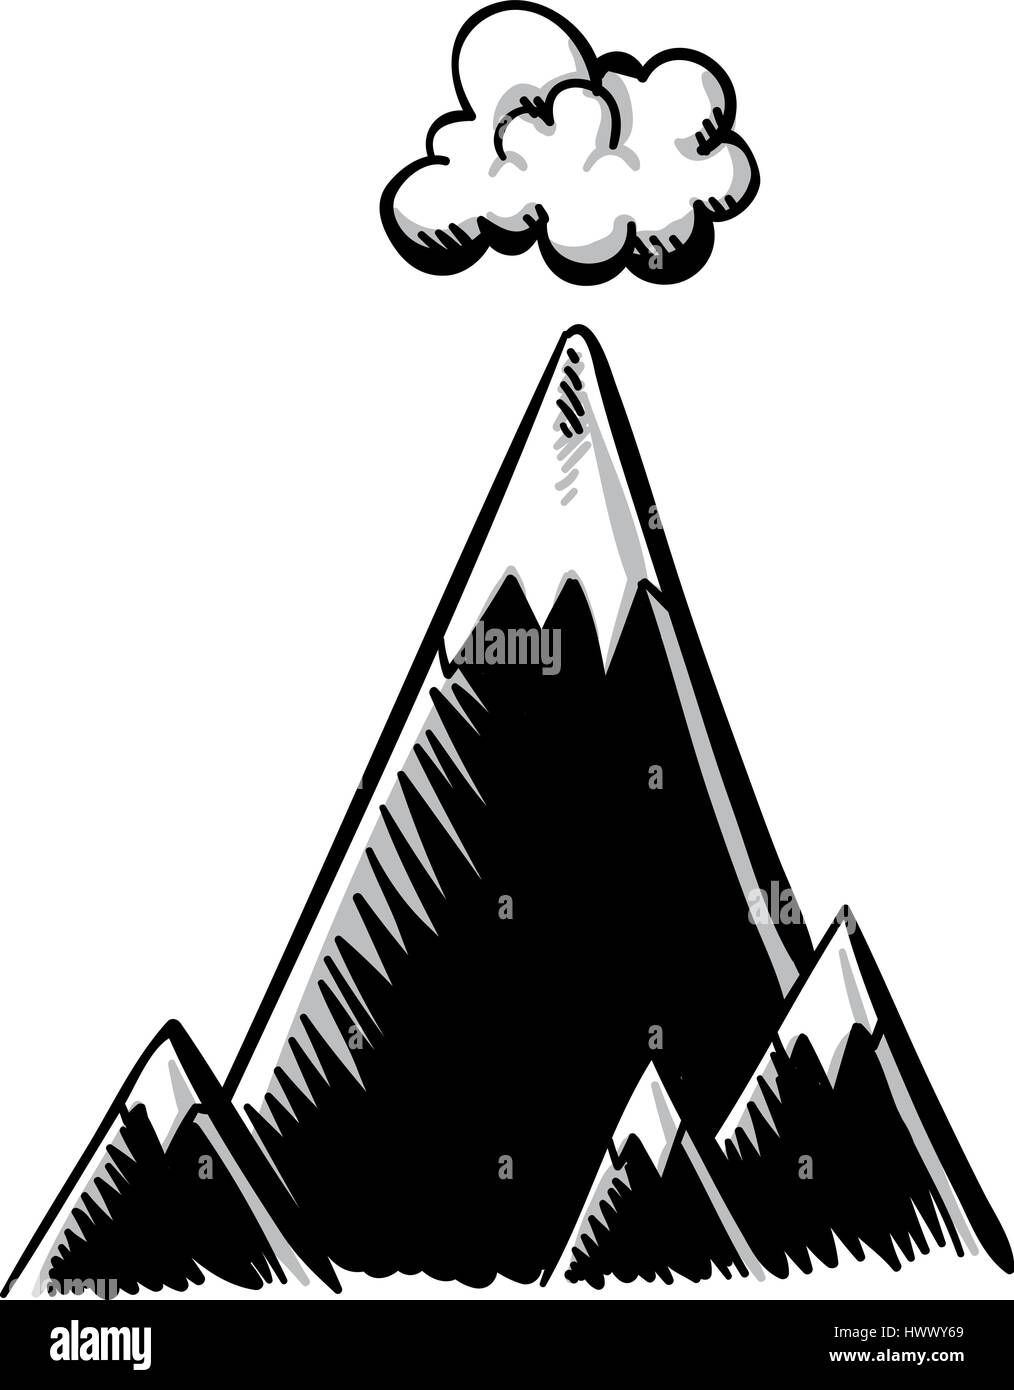 Cartoon mountain range Black and White Stock Photos & Images - Alamy